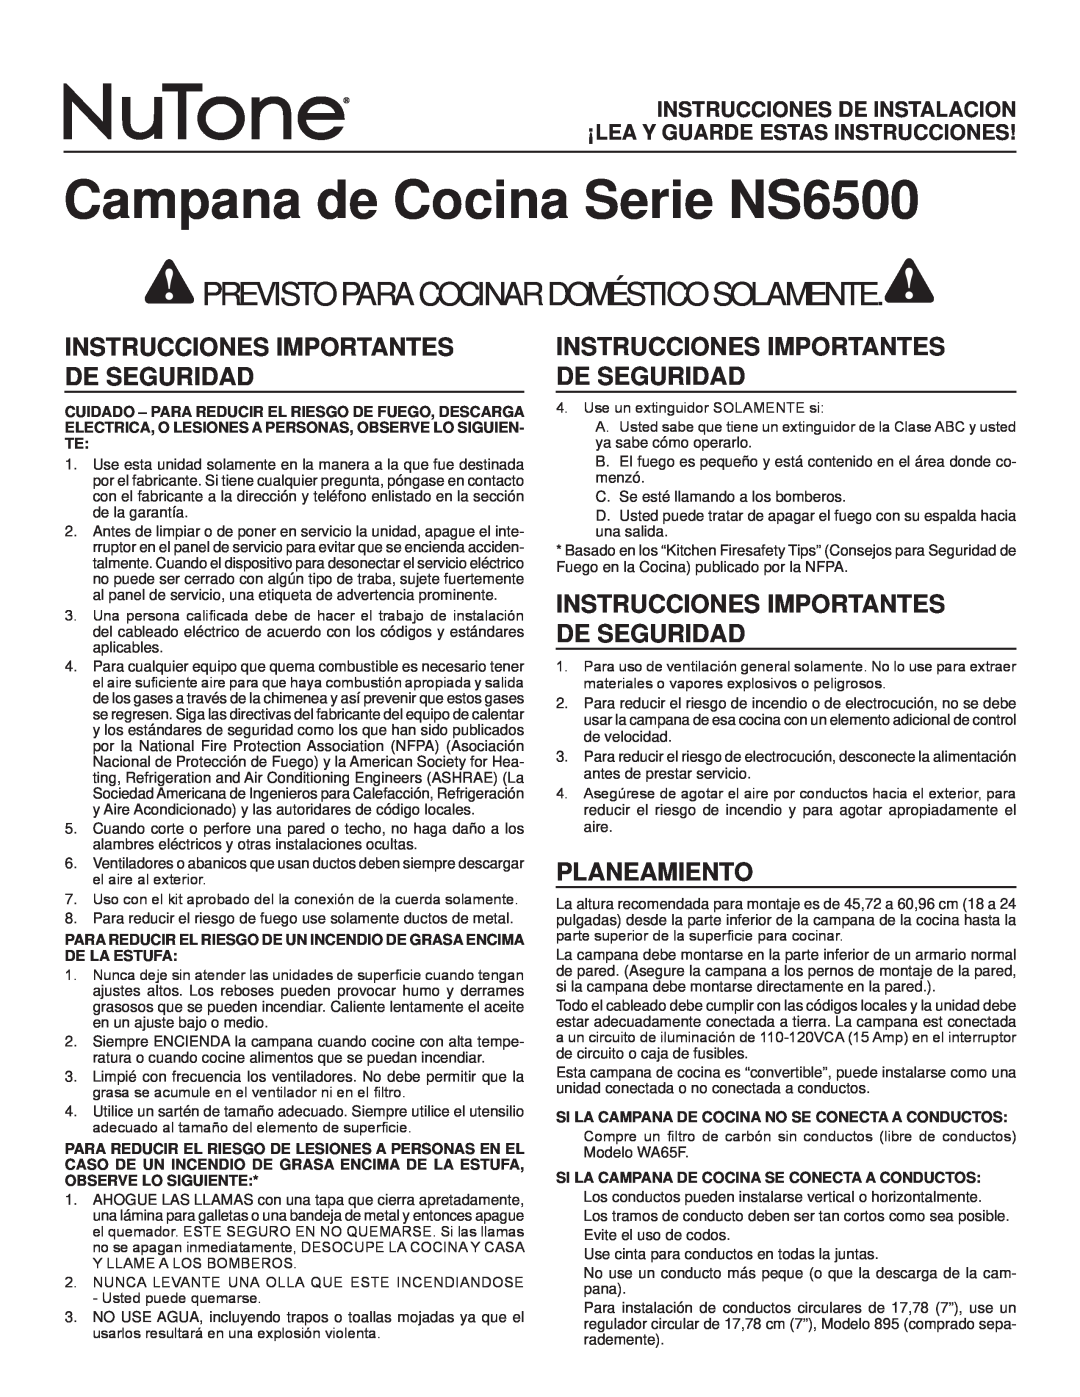 NuTone NS6500 Series Campana de Cocina Serie NS6500, Instrucciones Importantes De Seguridad, Planeamiento 